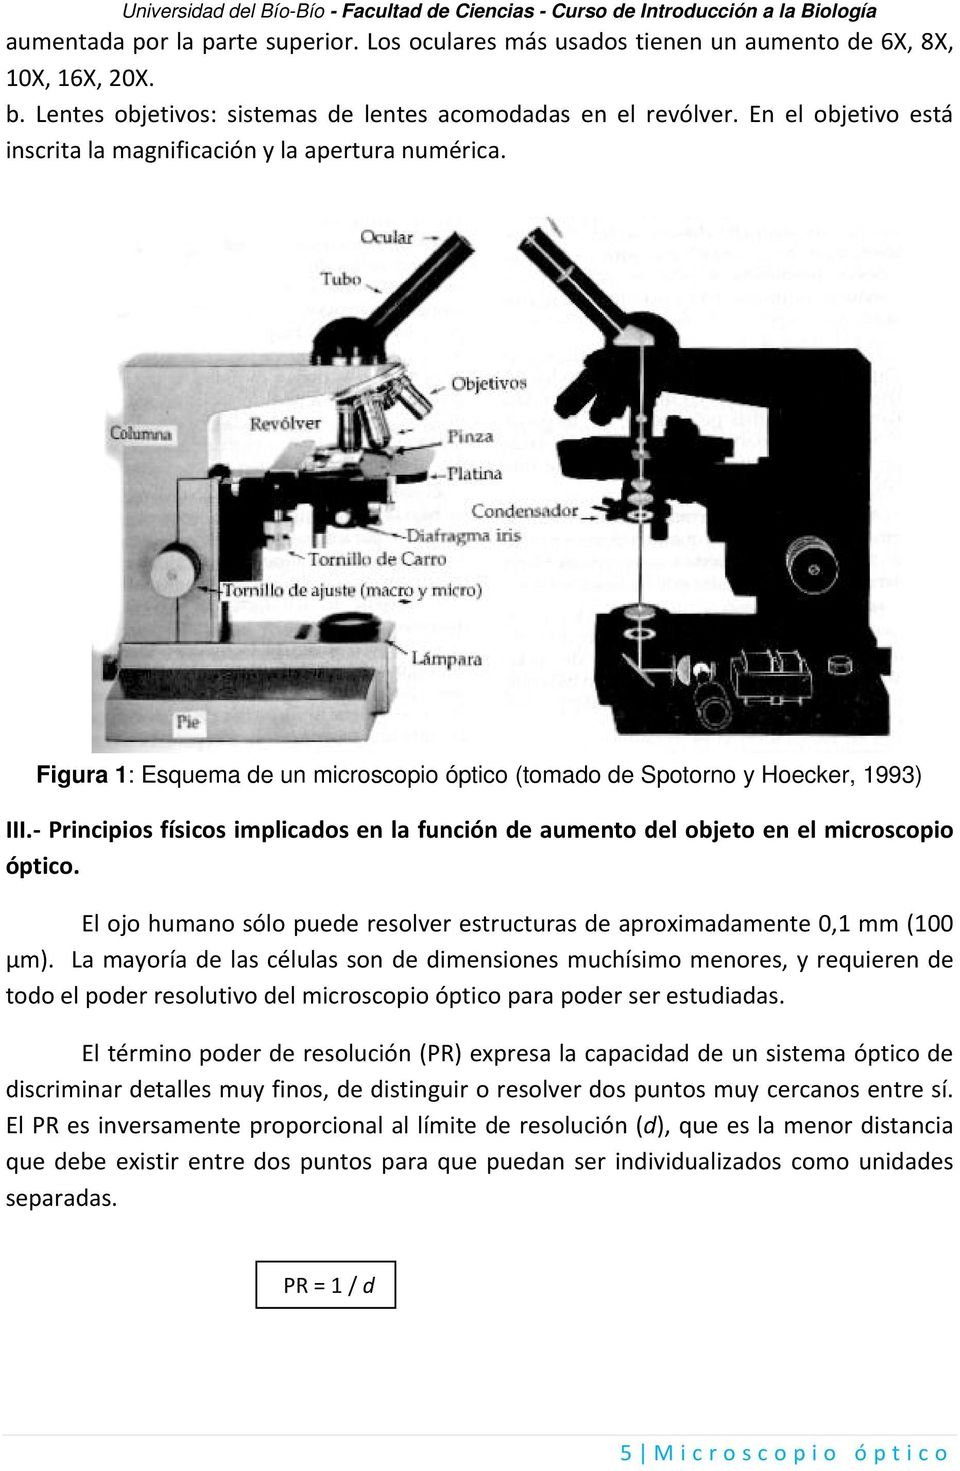 Principios físicos implicados en la función de aumento del objeto en el microscopio óptico. El ojo humano sólo puede resolver estructuras de aproximadamente 0,1 mm (100 µm).